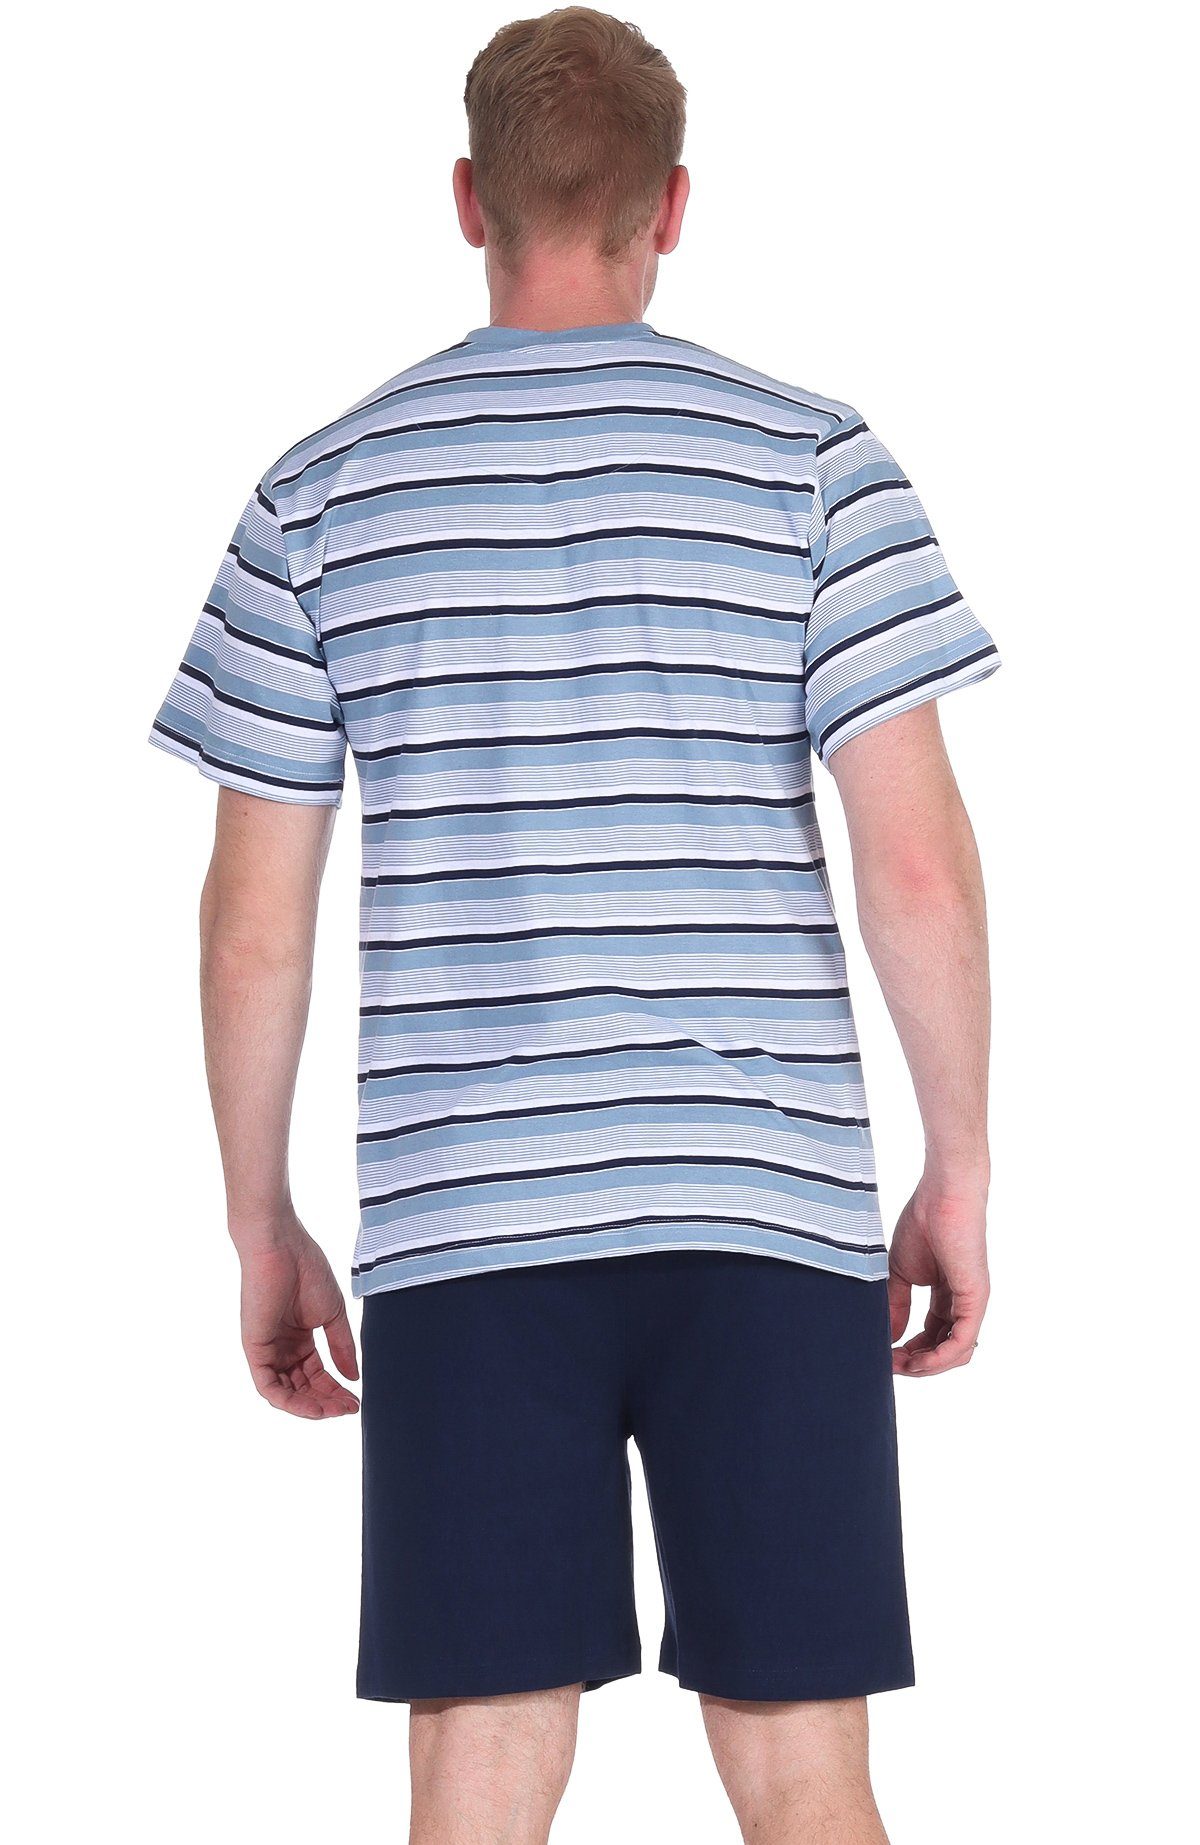 Moonline Shorty Herren Shorty V-Ausschnitt 100% Single-Jersey Kurzarm Blau mit Schlafanzug Baumwolle